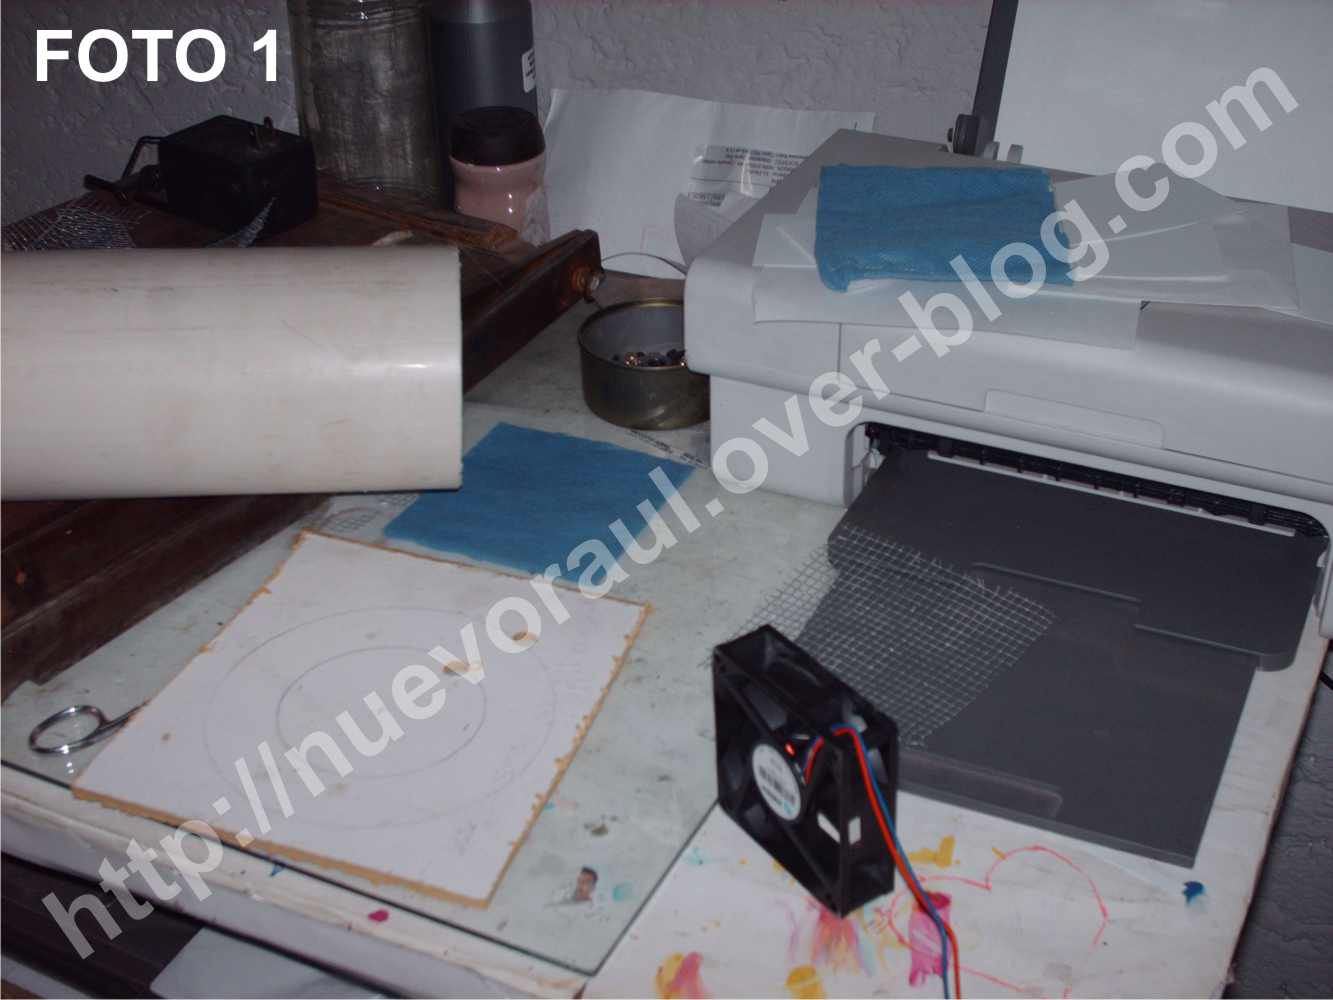 Construyendo un purificador de aire casero (proyecto escolar) - El blog de  nuevoraul